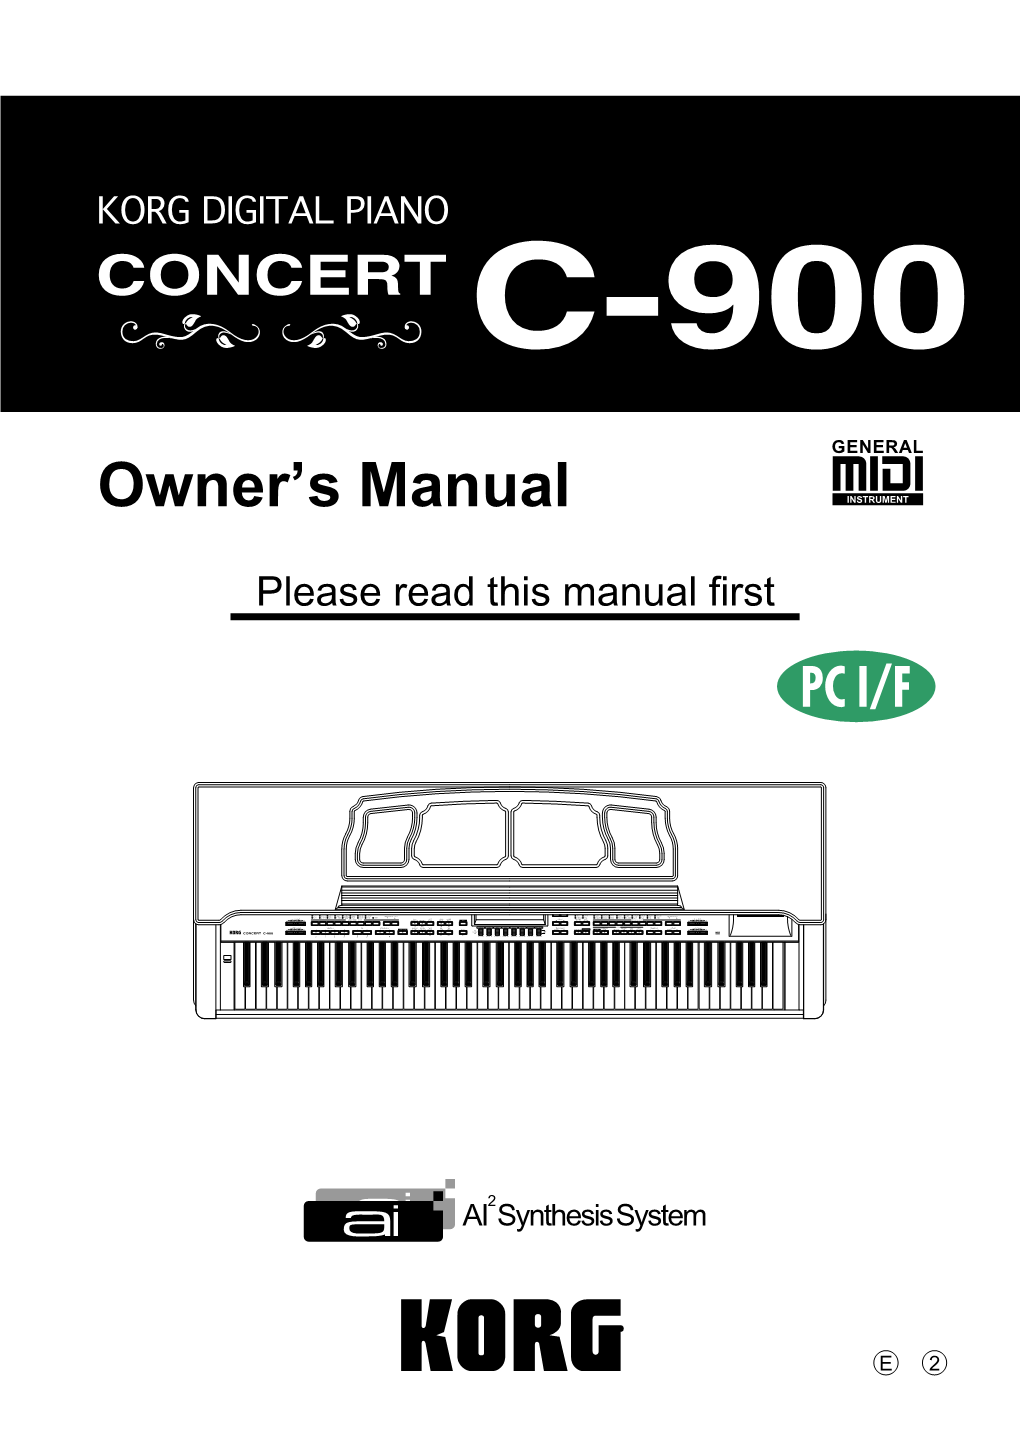 C-900 Owner's Manual